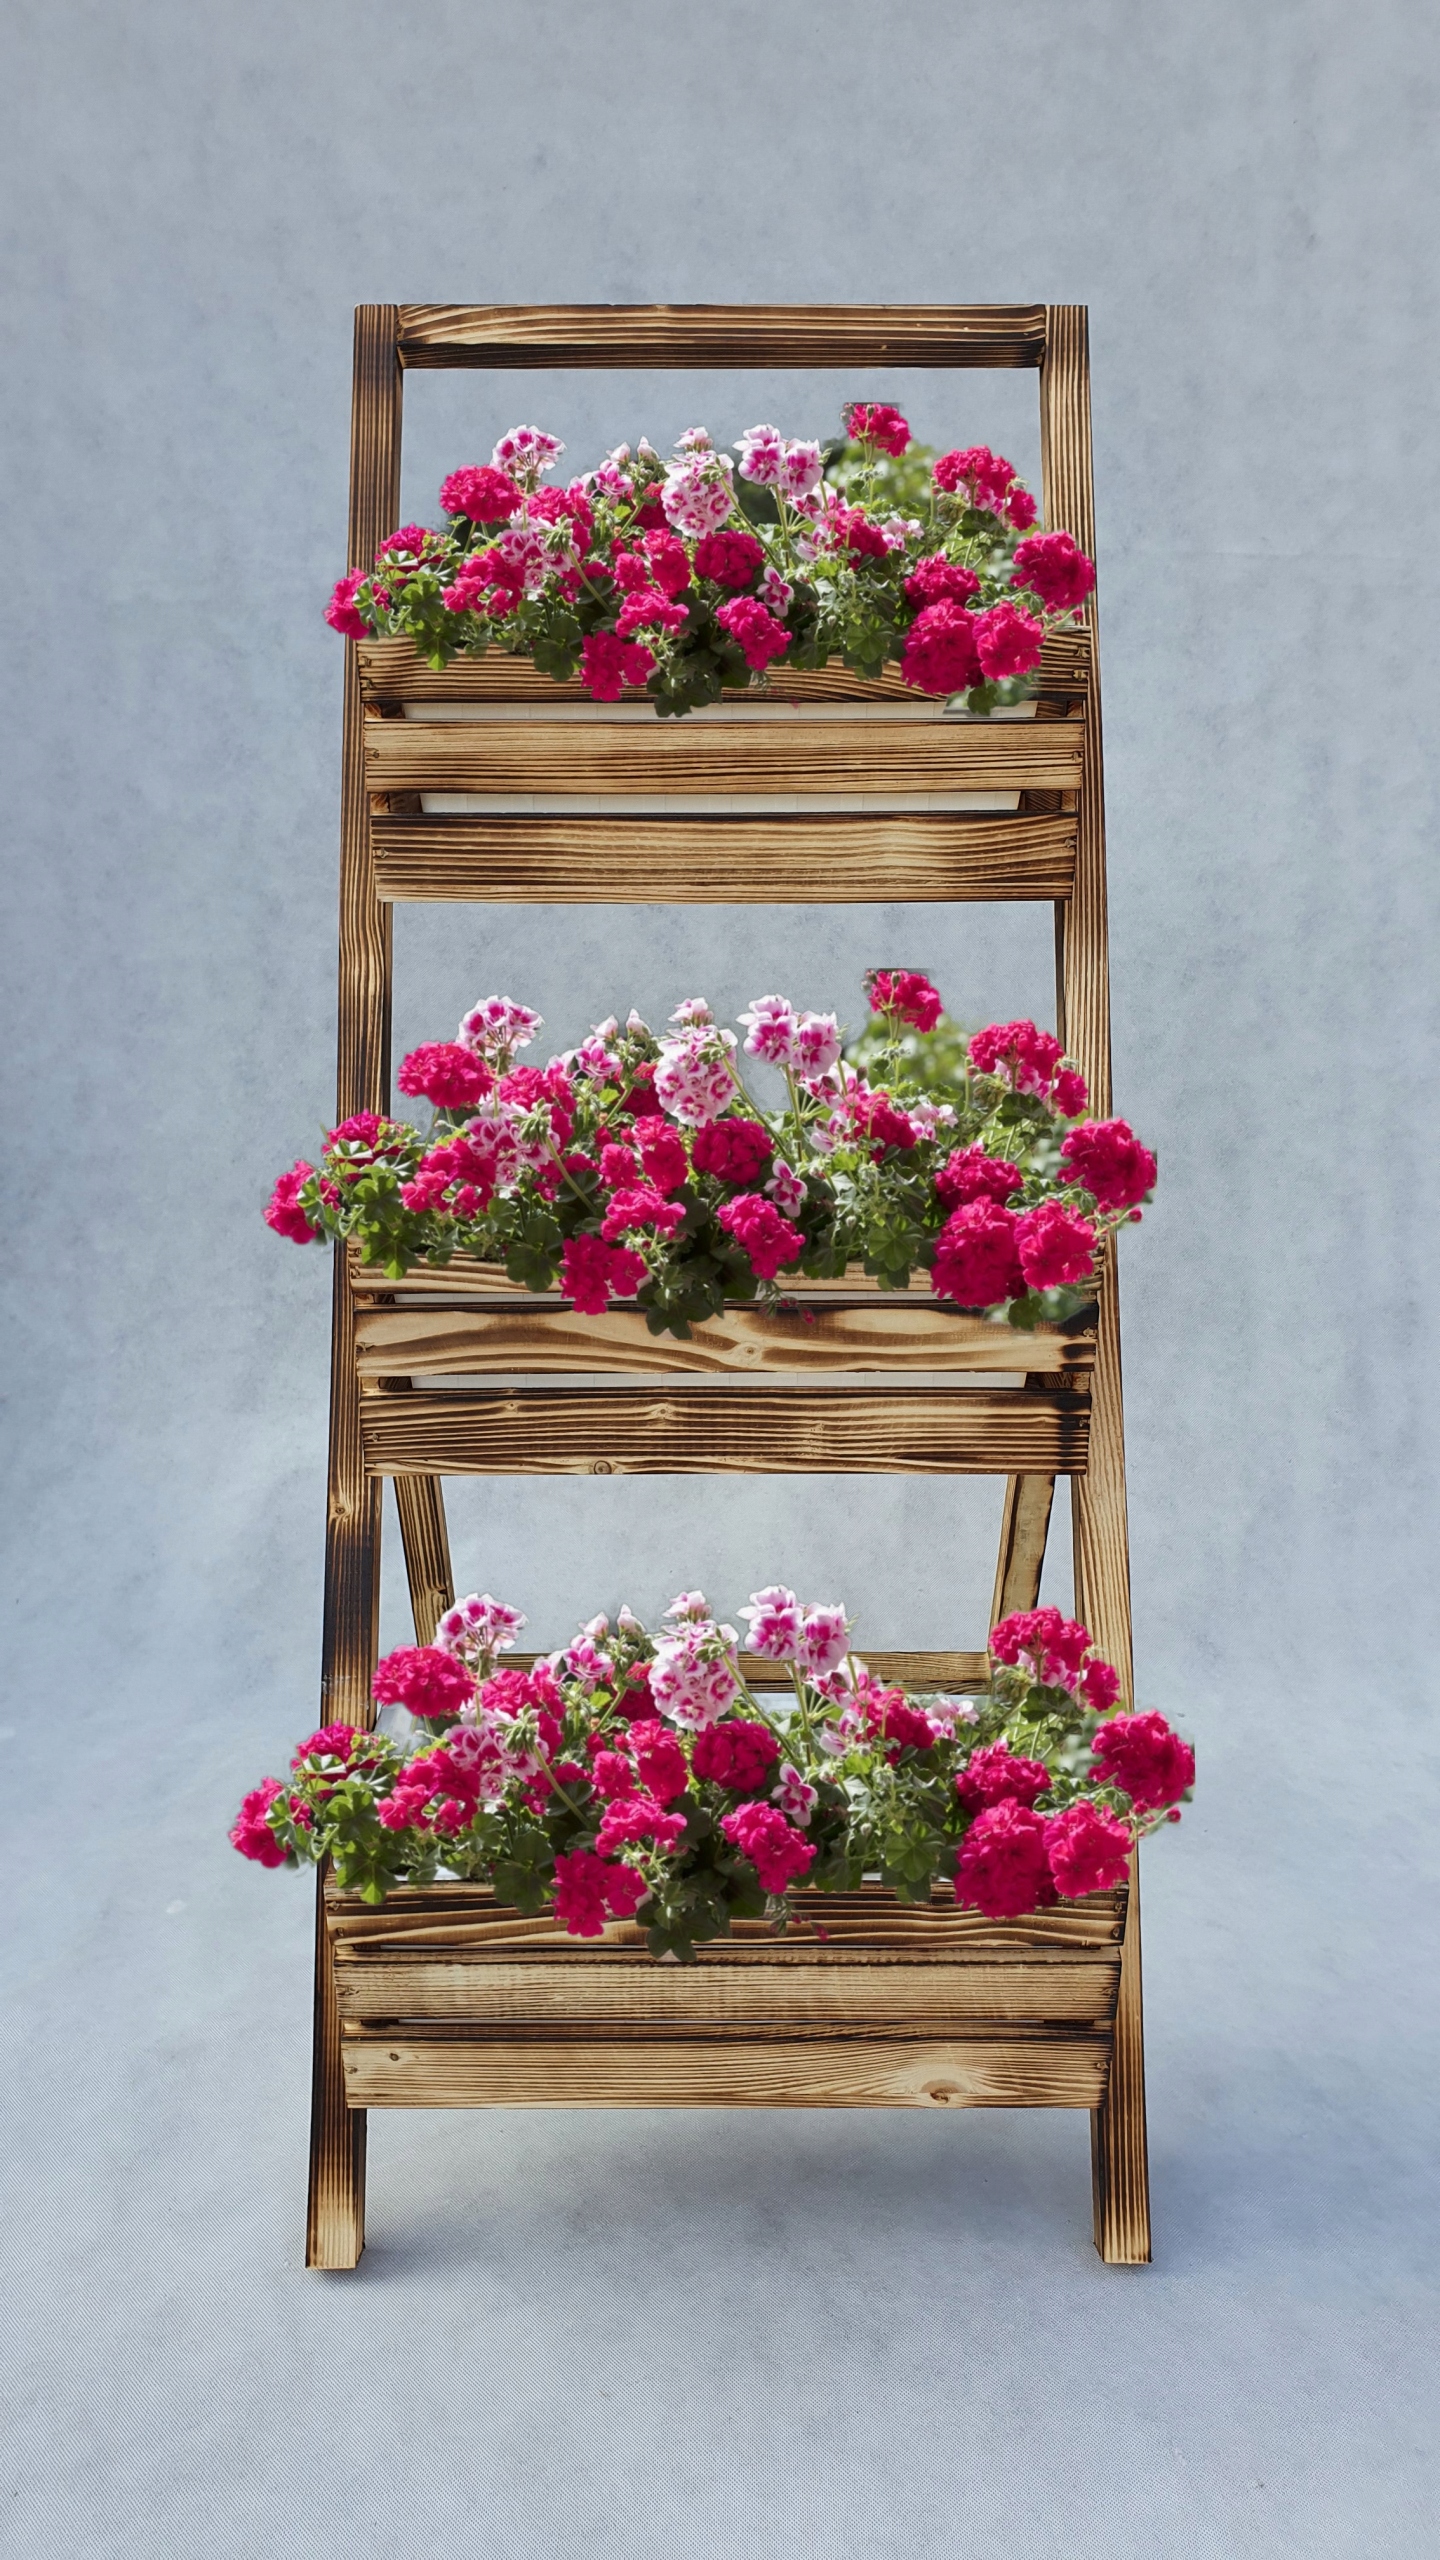 Kvetináč - Kvety stojan, kvetinový rebrík